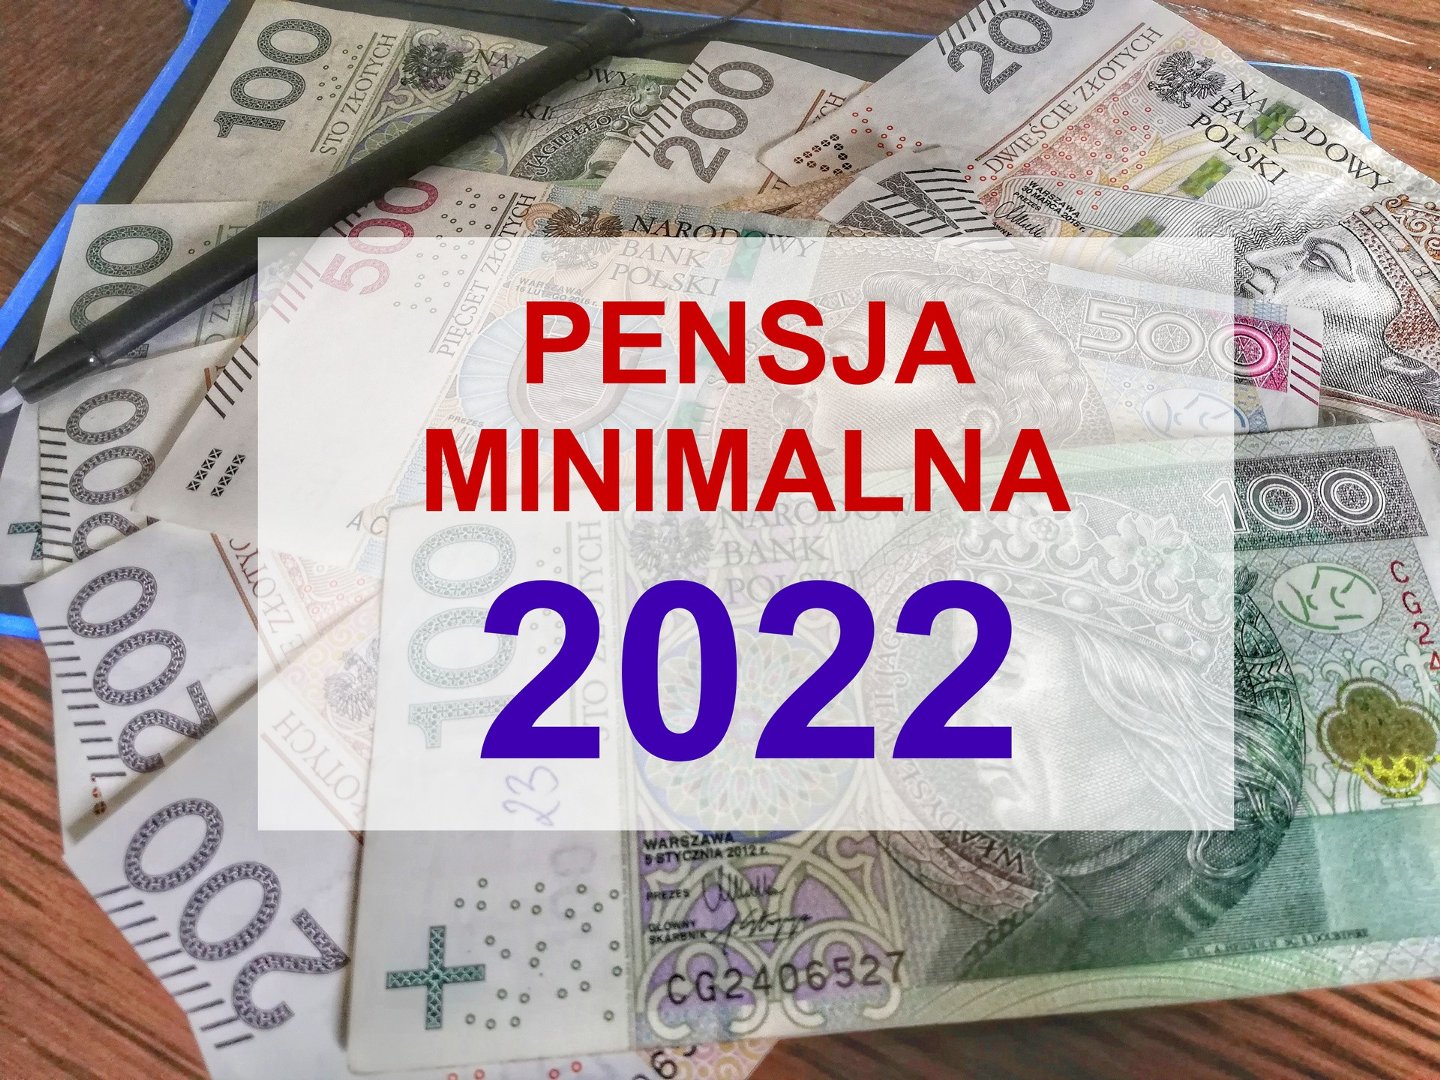 Pensja minimalna 2022 - wyliczenia netto. Za miesiąc podwyżka - nie tylko  najniższego wynagrodzenia | Express Bydgoski